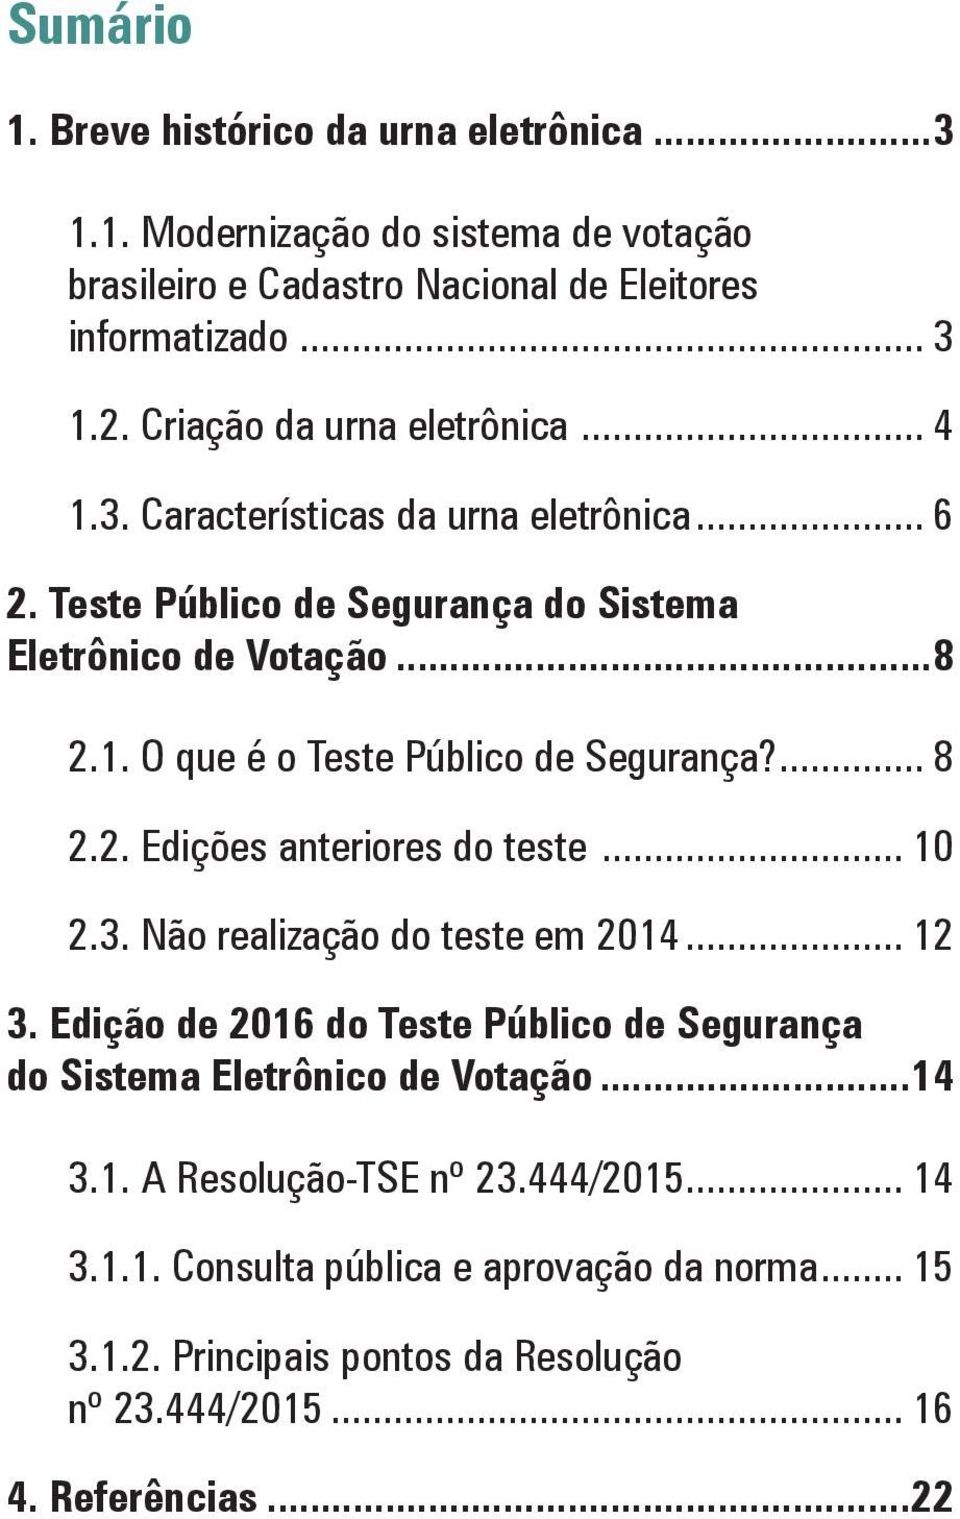 ... 8 2.2. Edições anteriores do teste... 10 2.3. Não realização do teste em 2014... 12 3. Edição de 2016 do Teste Público de Segurança do Sistema Eletrônico de Votação.